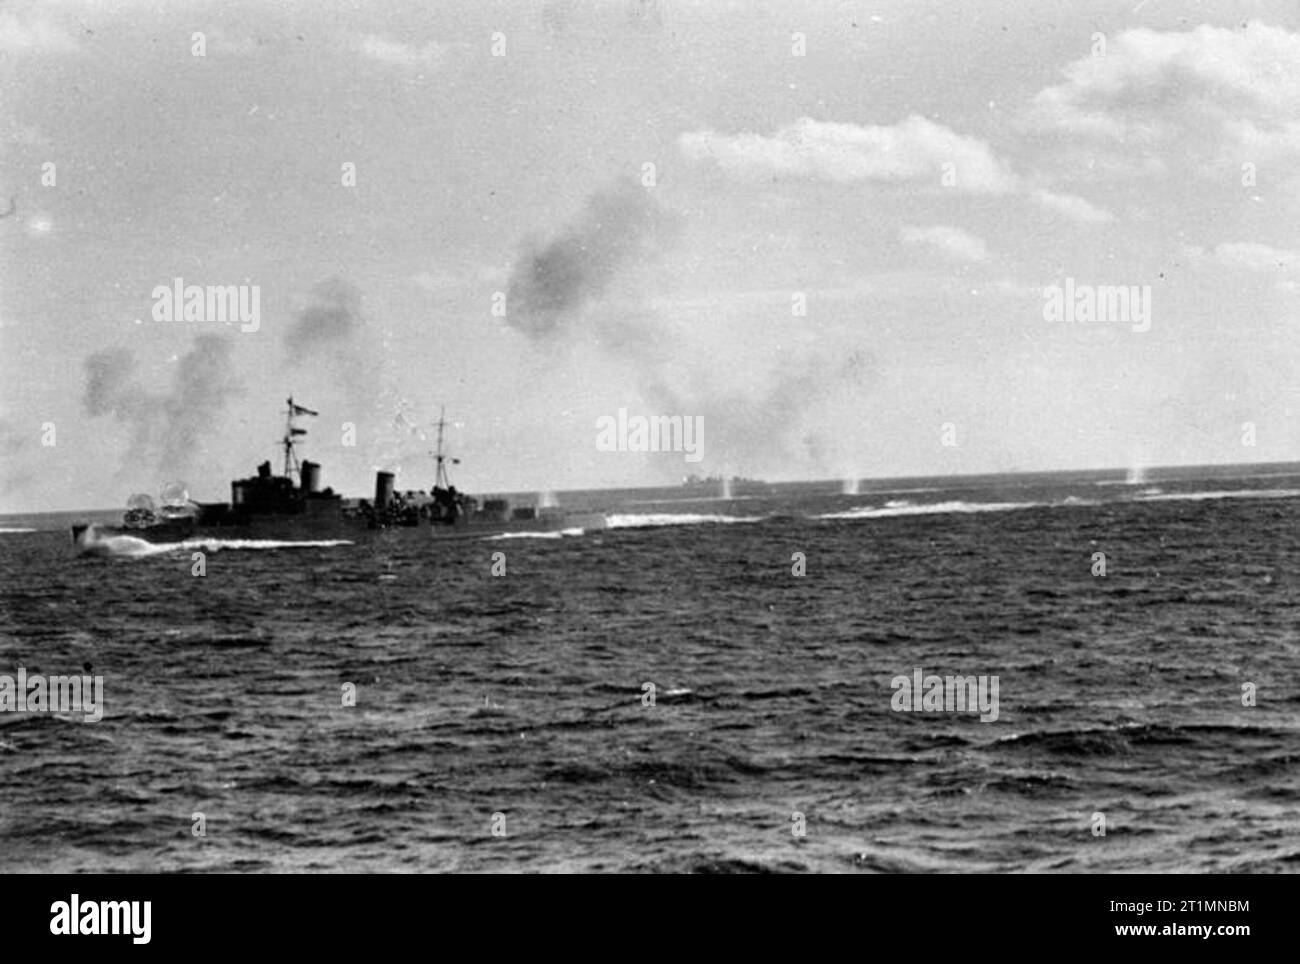 Die Royal Navy während des Zweiten Weltkriegs HMS SOUTHAMPTON feuern während der Flotte Aktion aus Sardinien. Der Blitz der die Waffen gesehen werden kann, so können die Spritzer des Feindes Muscheln gesehen fallen kurz und Achteraus. Foto von HMS Sheffield genommen. Einen italienischen Kreuzer und zwei italienischen Zerstörer wurden in diese Aktion beschädigt. Stockfoto